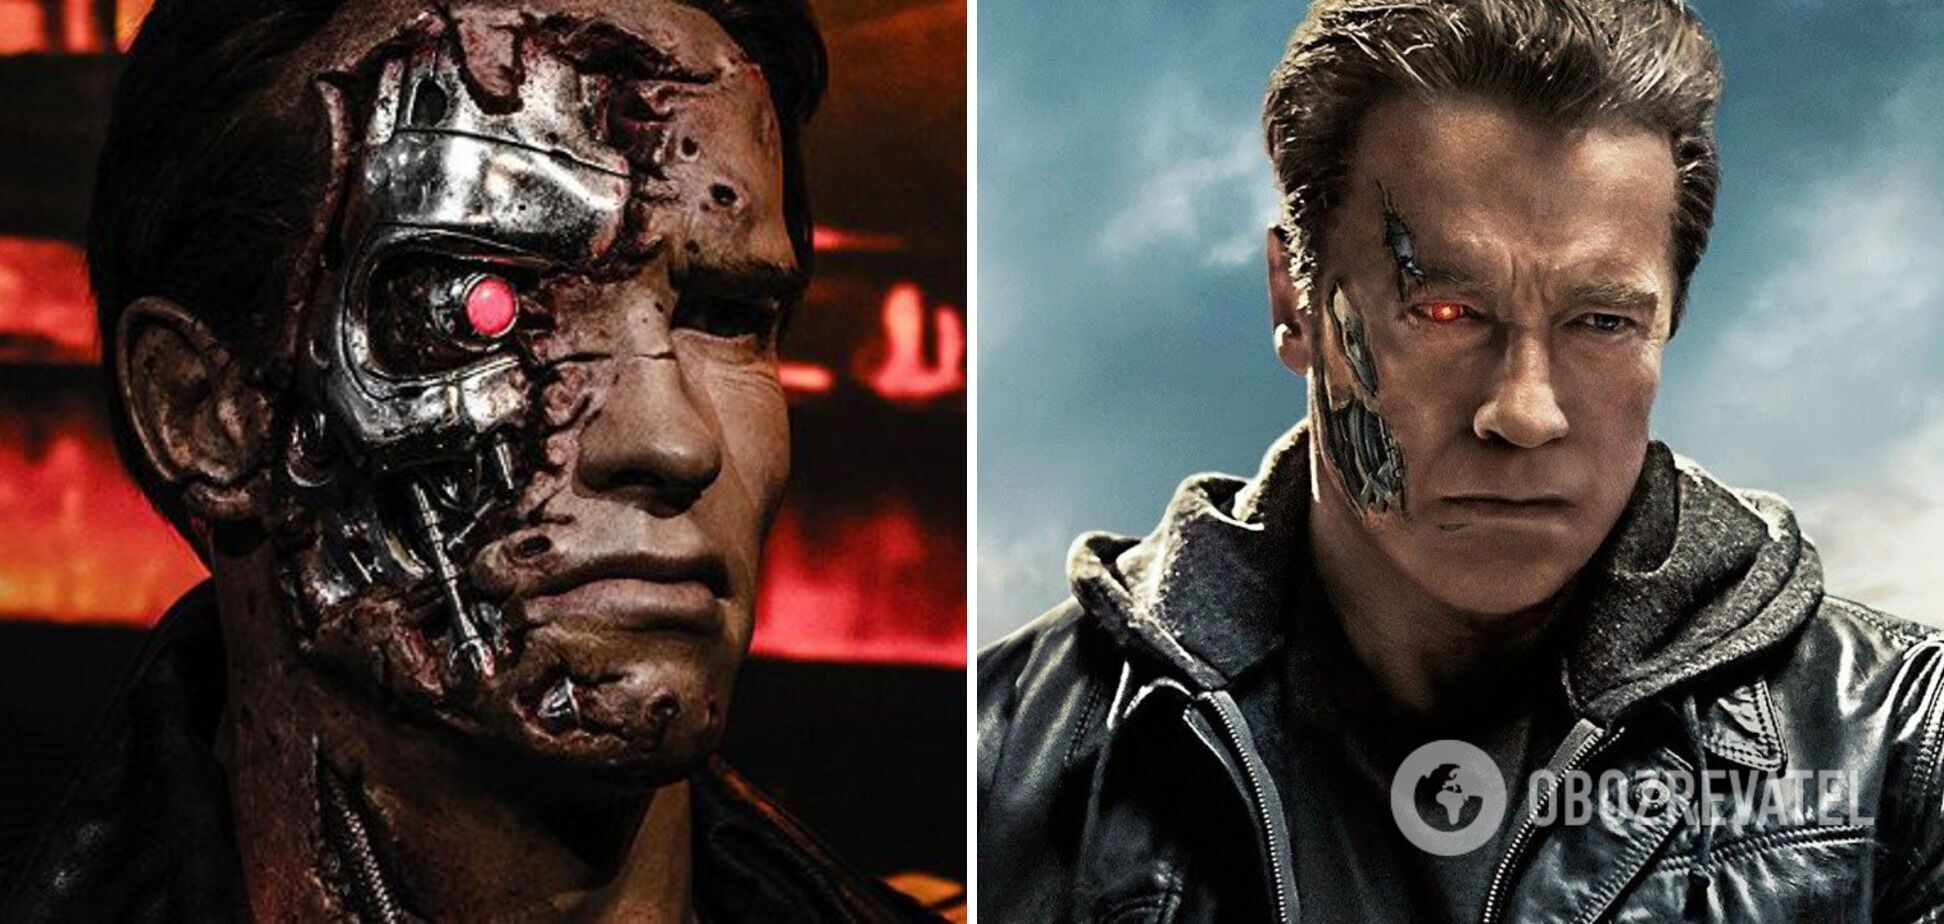 Teraz jak prawdziwy Terminator. Arnold Schwarzenegger został wyposażony w rozrusznik serca po trzech operacjach na otwartym sercu